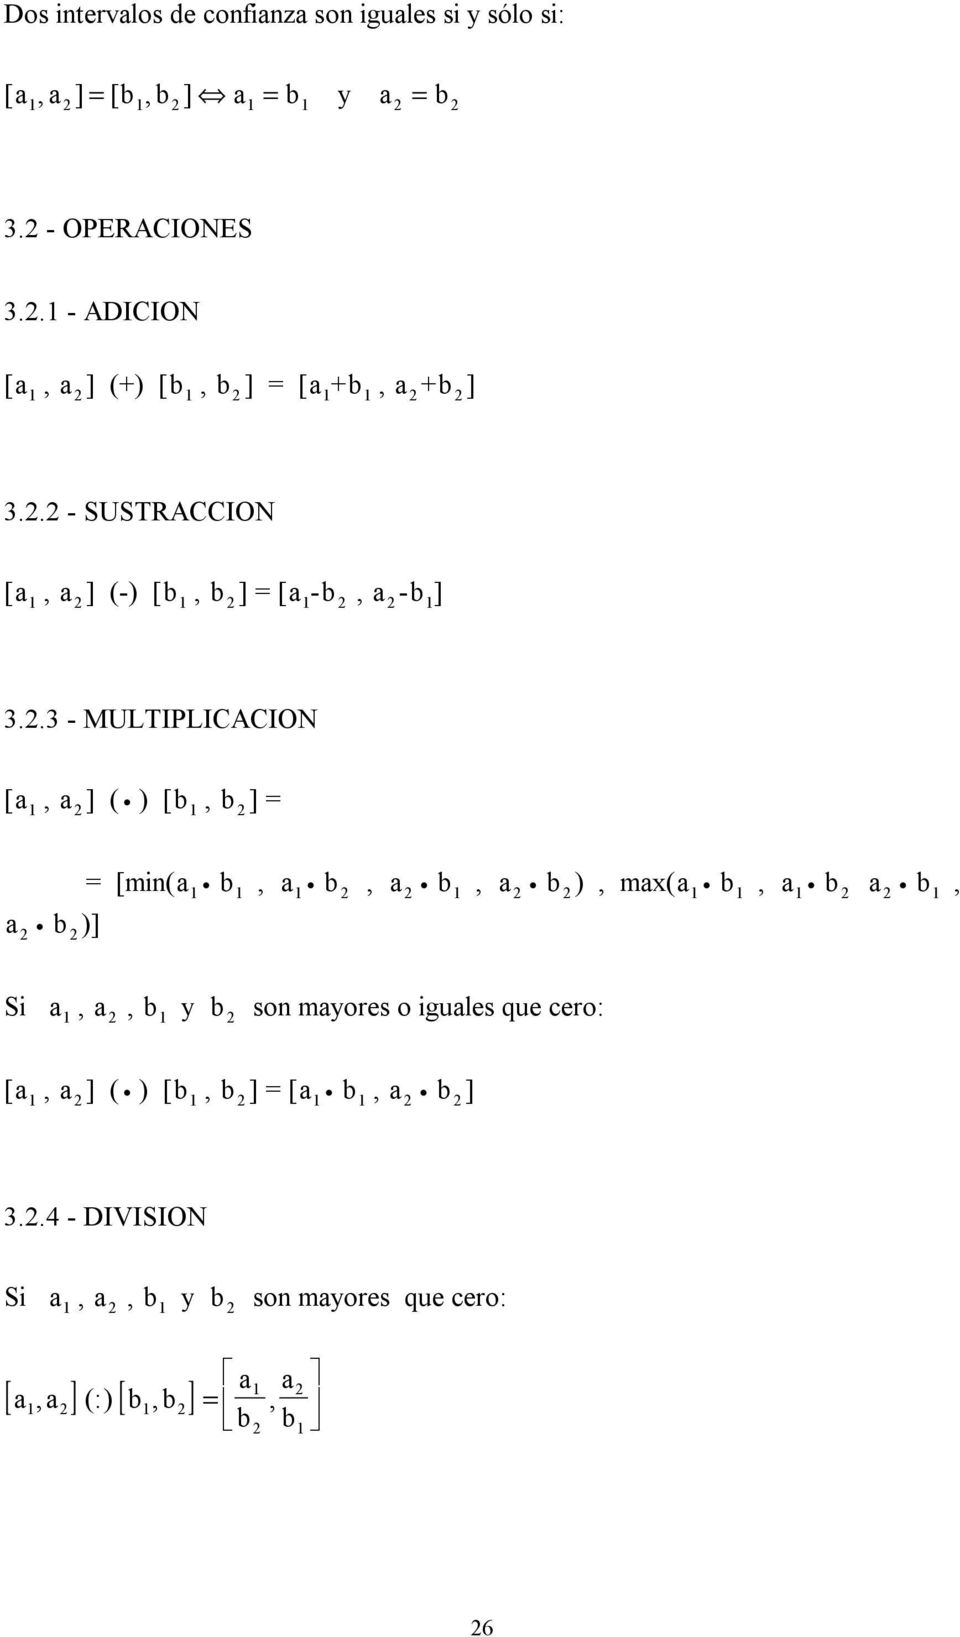 2.3 - MULTIPLICACION [a 1 ] ( ) [b 1, b 2 ] = a 2 b 2 )] = [m(a 1 b 1, a 1 b 2 b 1 b 2 ), max(a 1 b 1, a 1 b 2 a 2 b 1, S a 1, b 1 y b